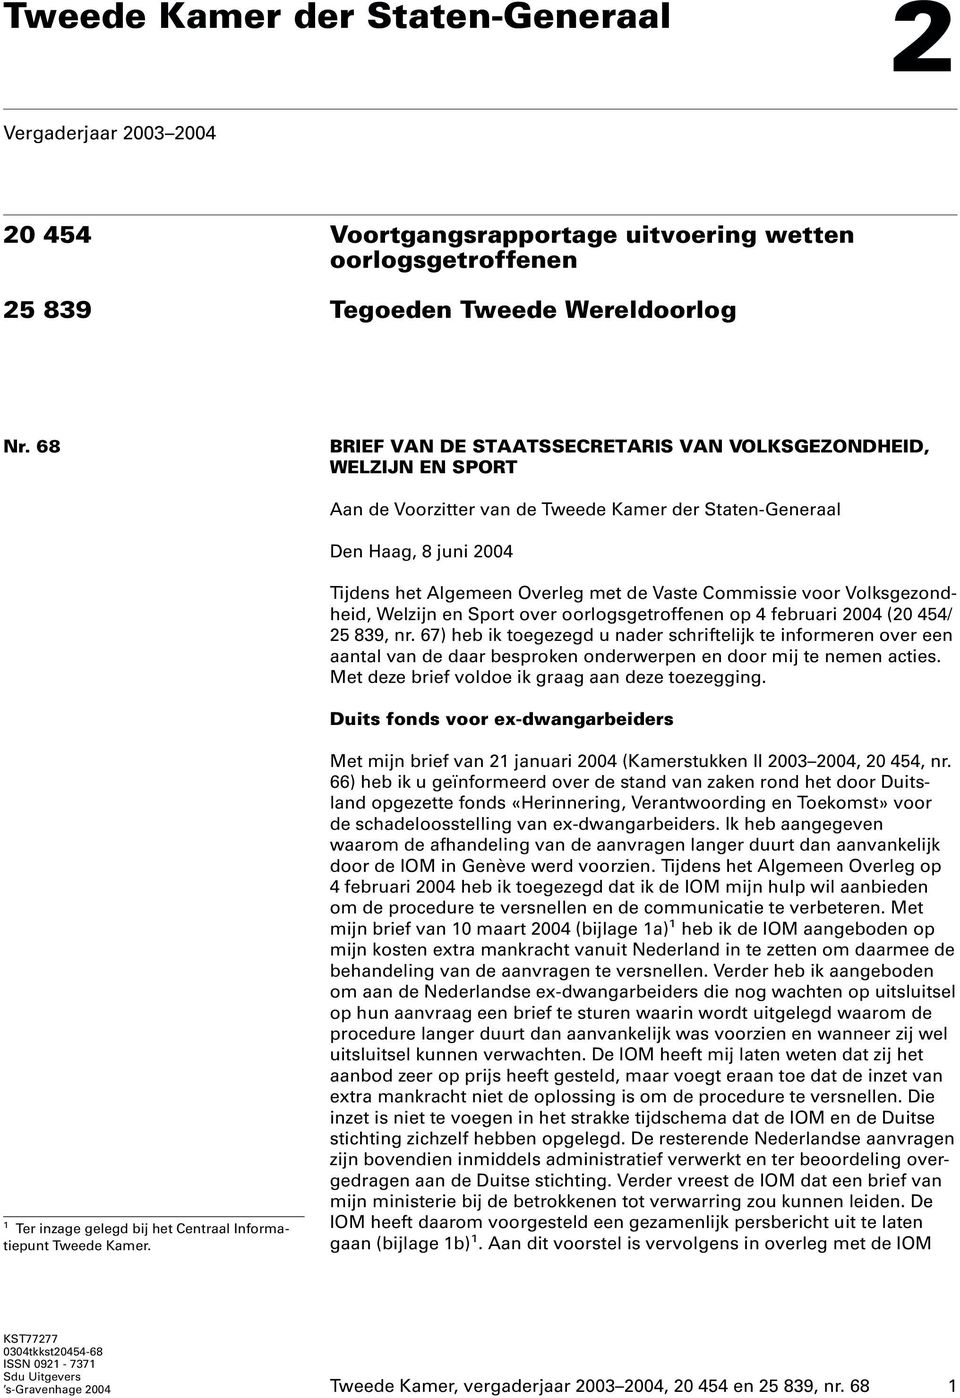 Commissie voor Volksgezondheid, Welzijn en Sport over oorlogsgetroffenen op 4 februari 2004 (20 454/ 25 839, nr.